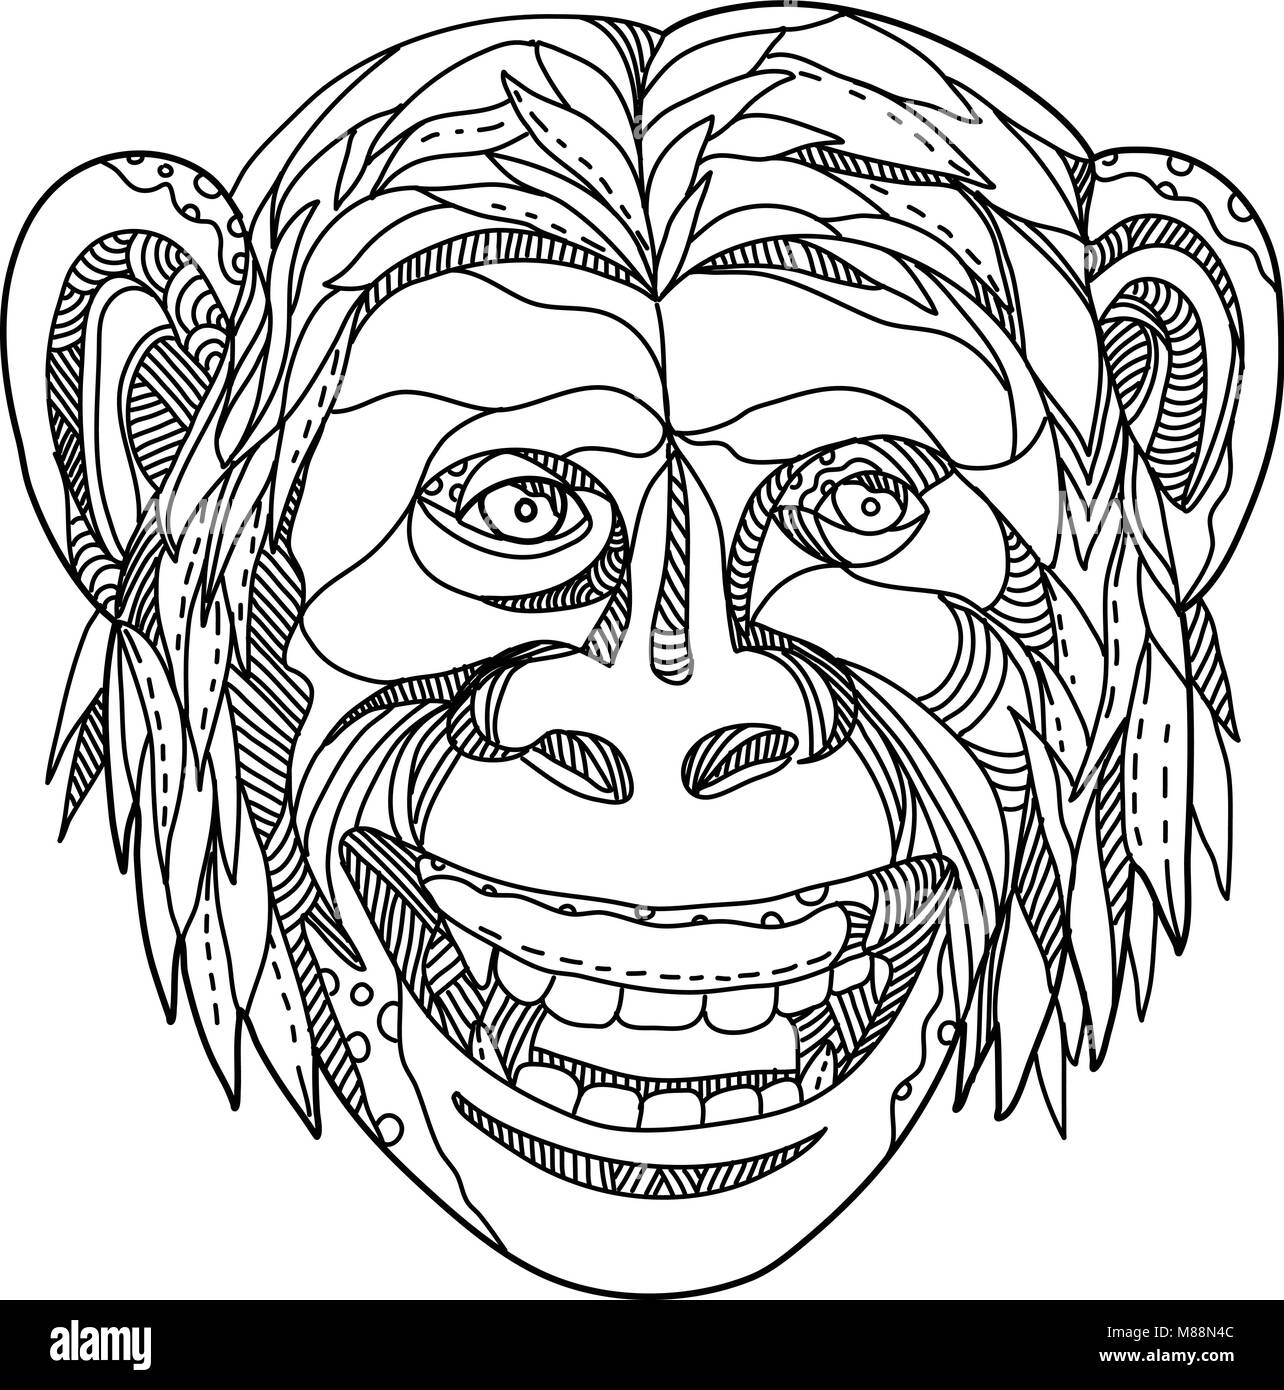 Doodle art Illustration der Kopf einer humanzee, Apeman caveman oder Neandertaler, ein Schimpanse/human Hybrid oder einem frühen menschlichen mit Merkmalen von Menschenaffen und Huma Stock Vektor